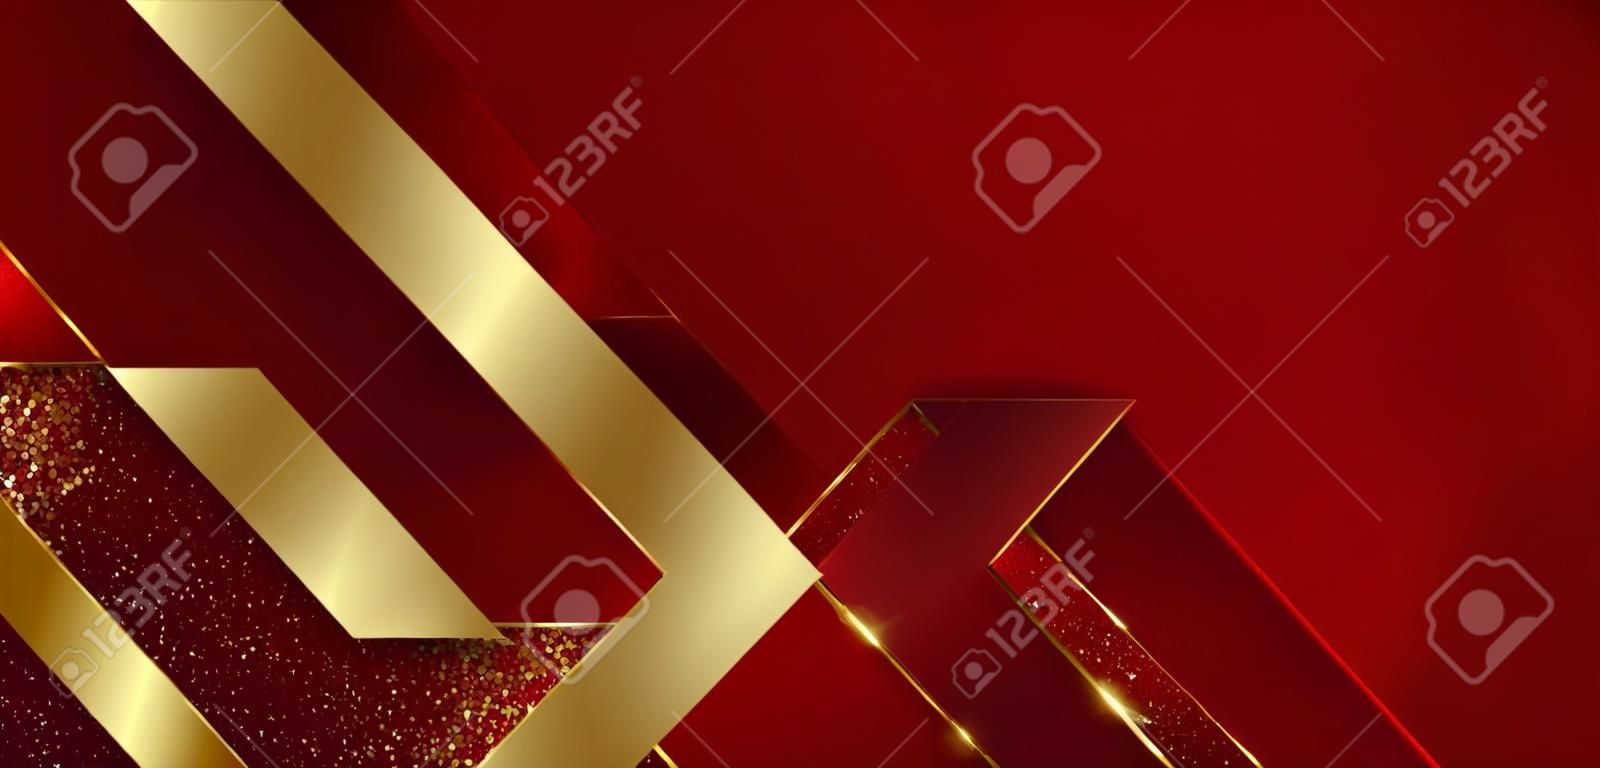 추상적인 3d 현대적인 고급 템플릿 빨간색 색상과 금색 글리터 선 빛 스파클이 있는 금색 화살표 배경. 벡터 일러스트 레이 션